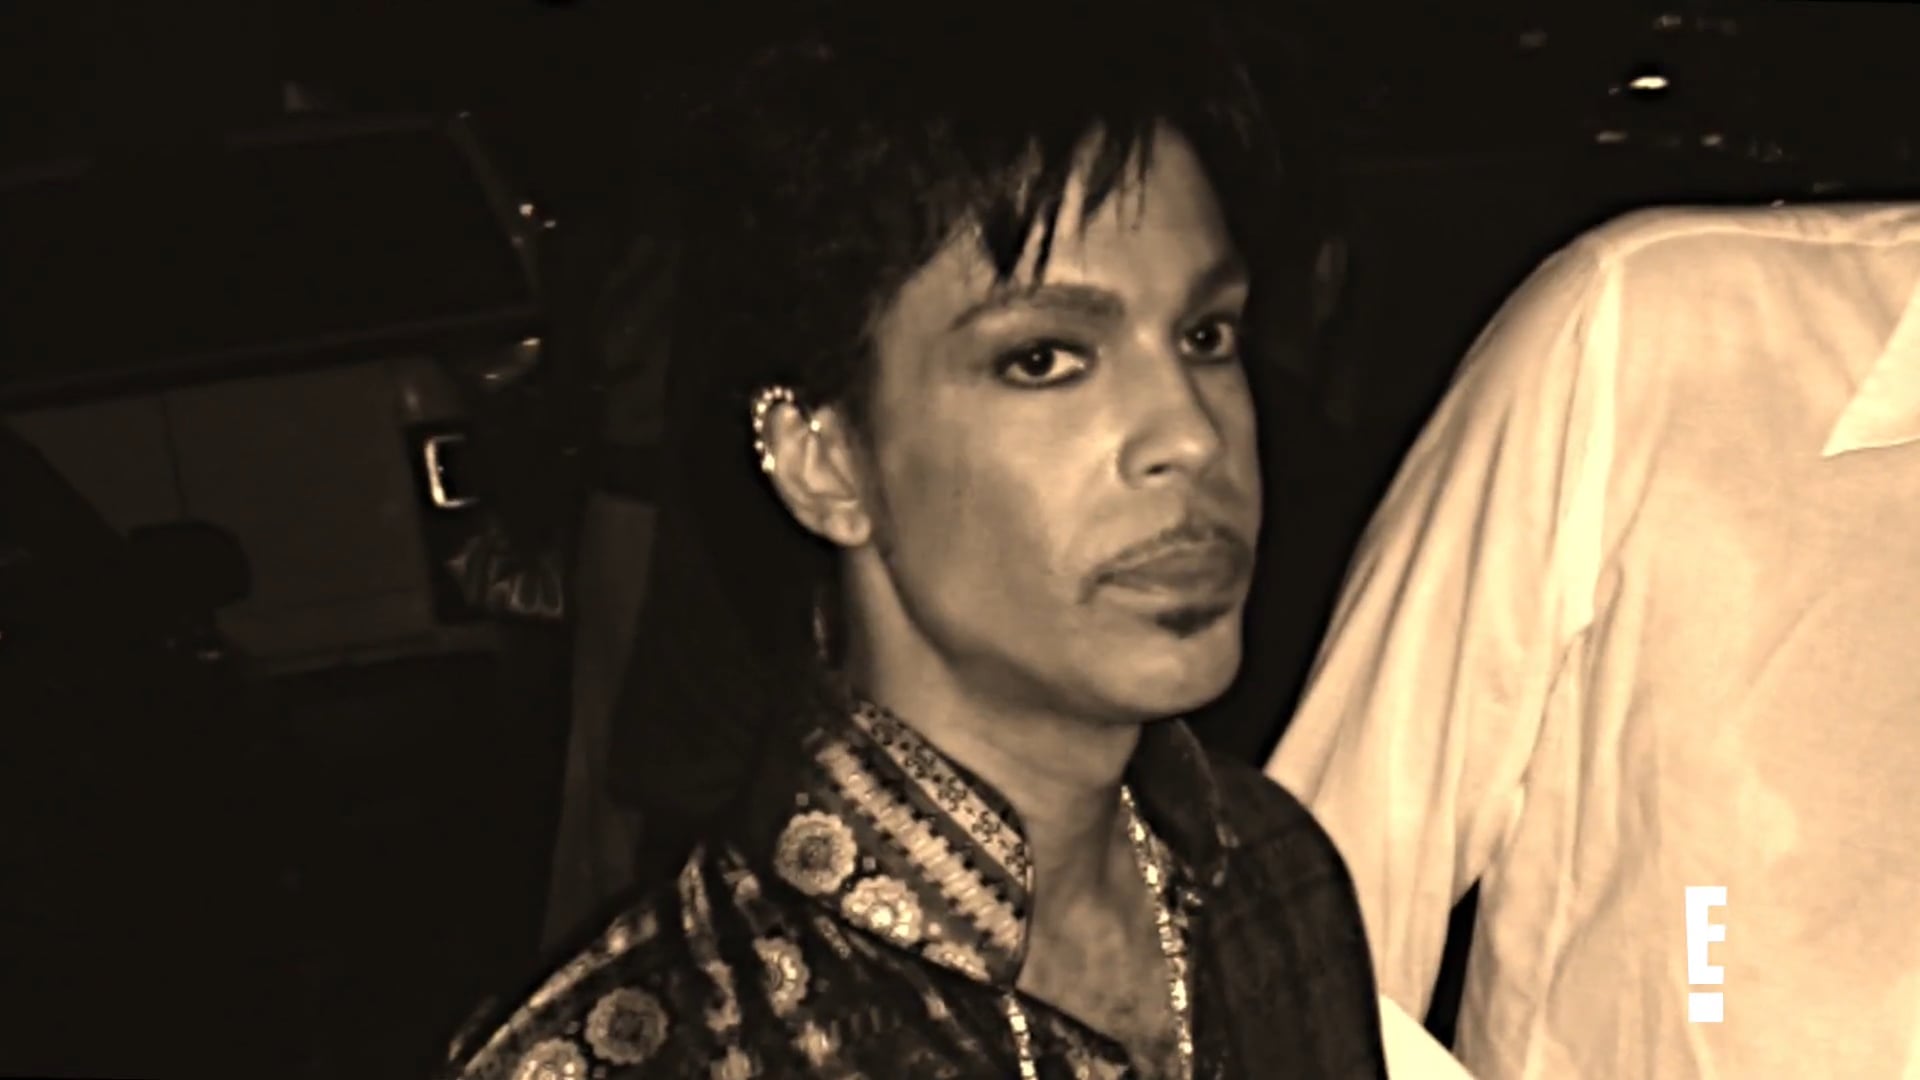 "Prince Came Back to Life"